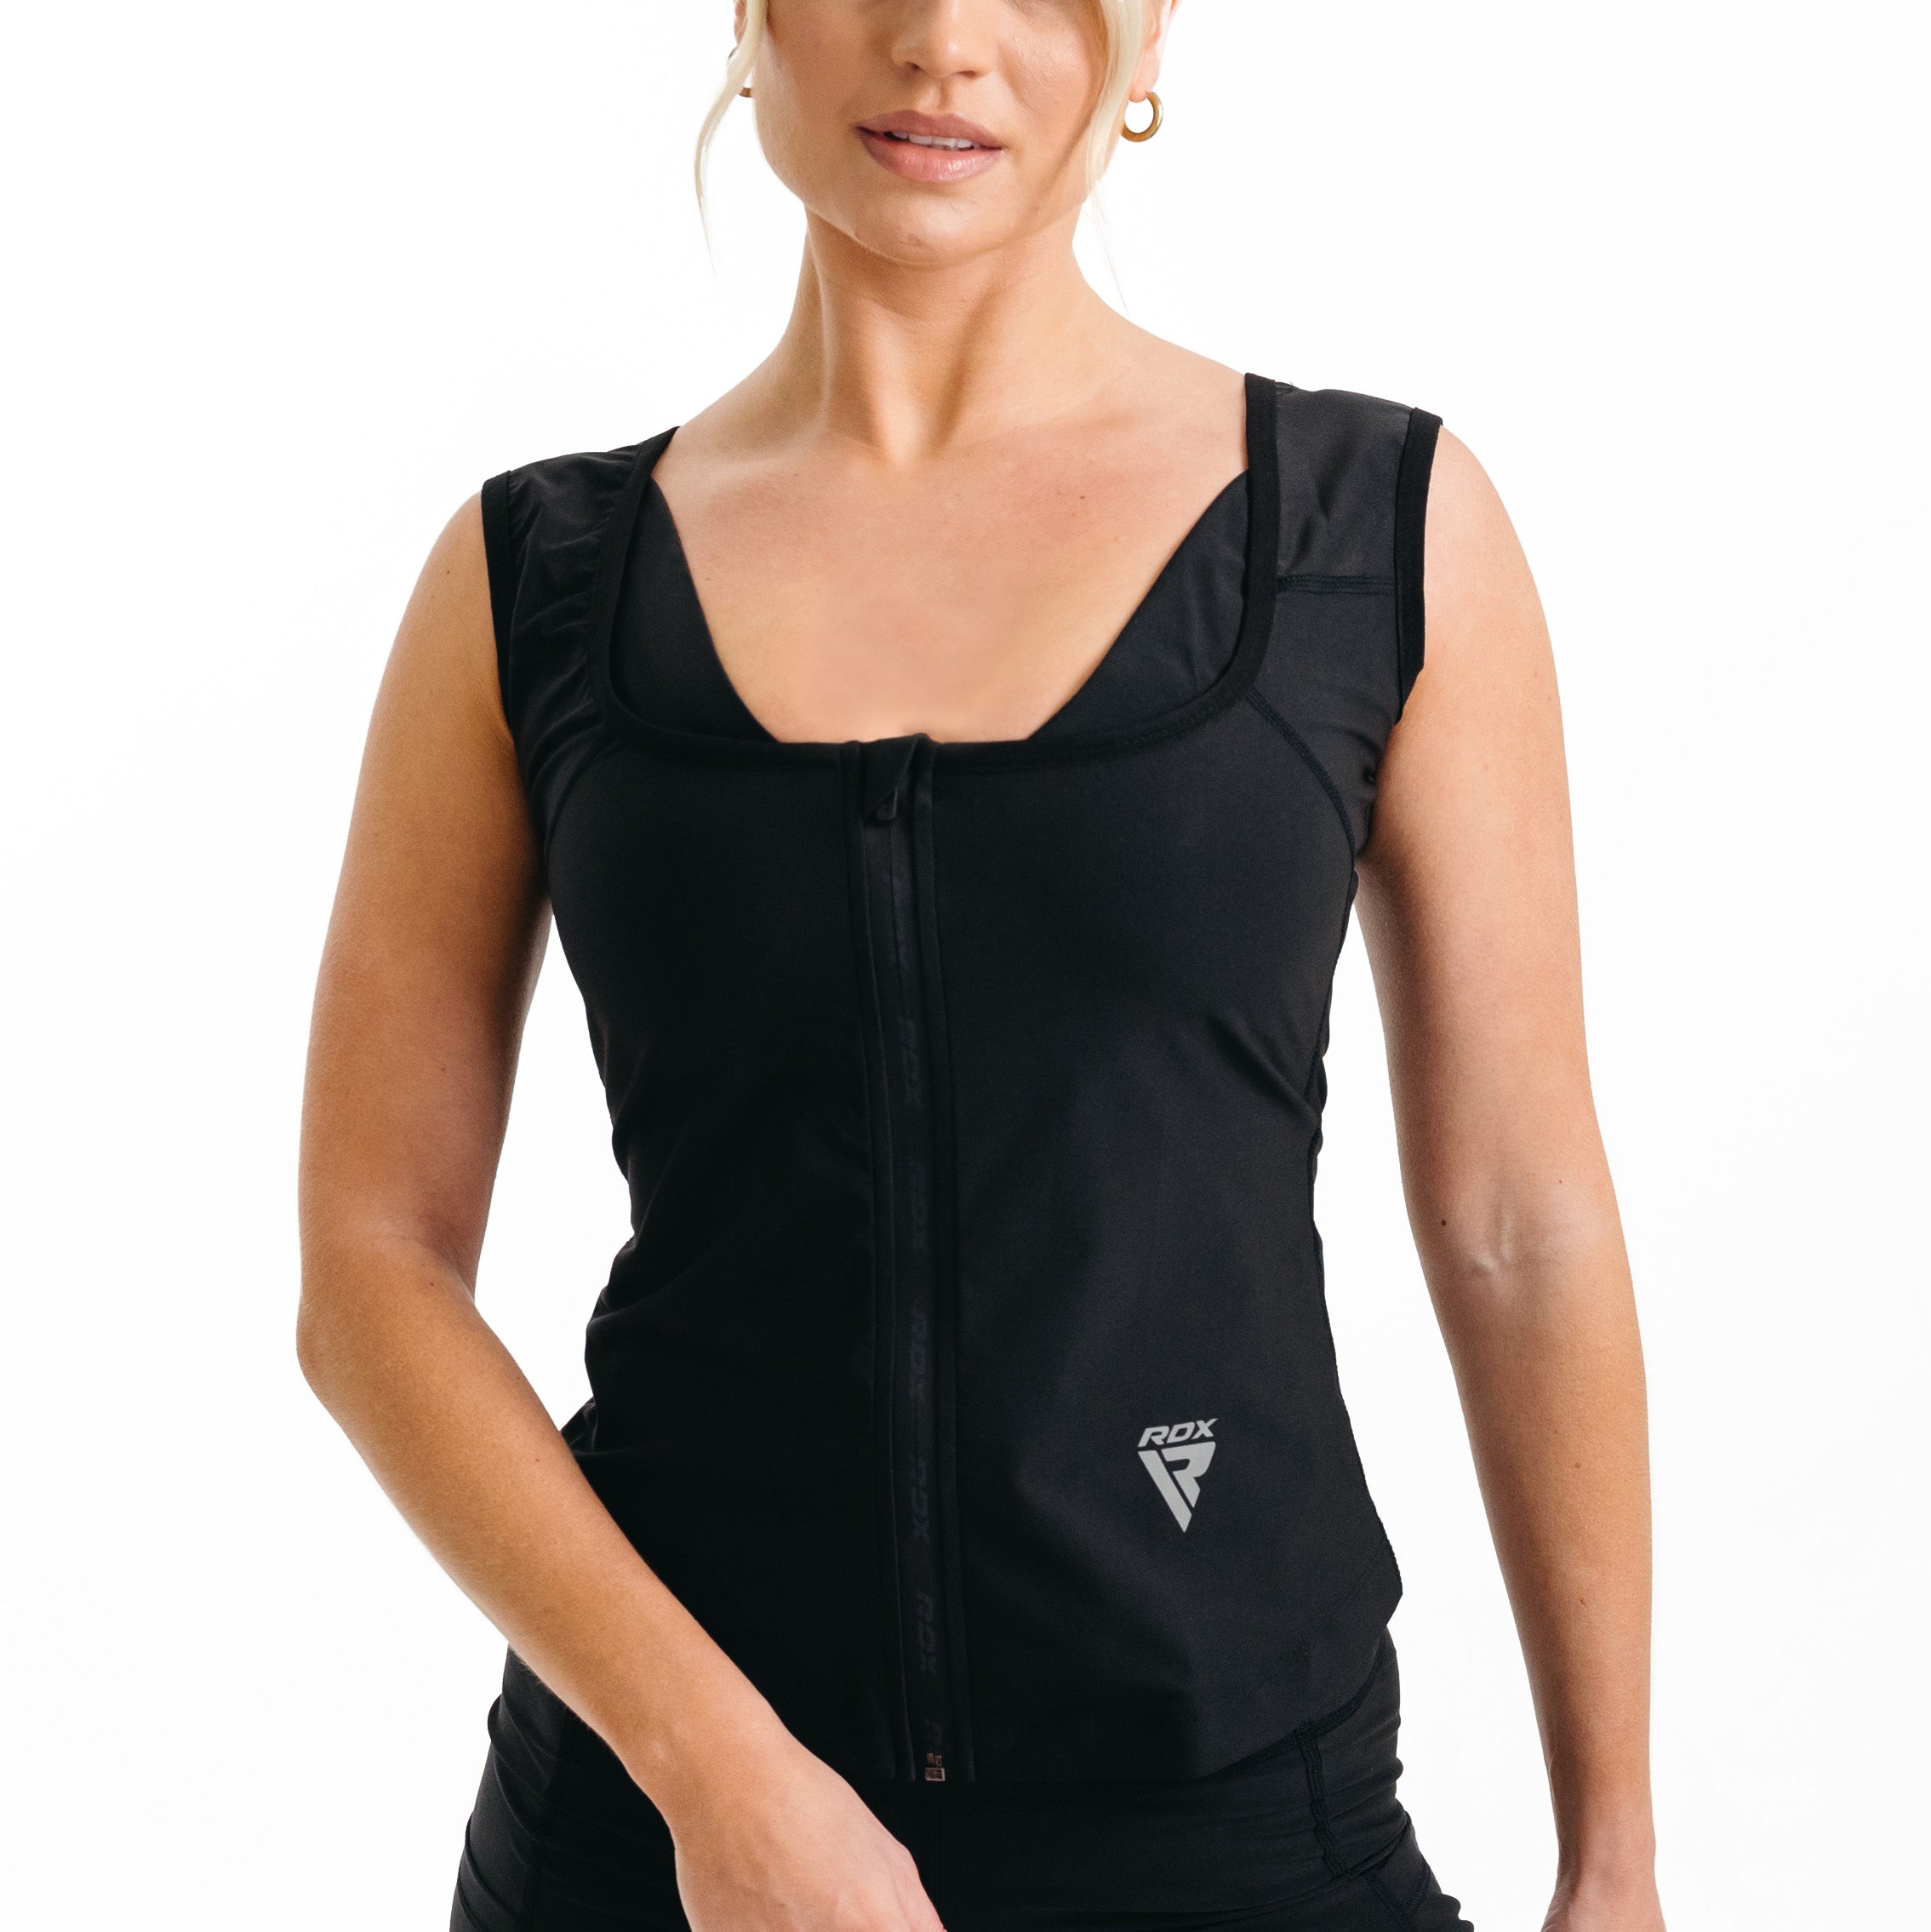  MATKAO Sauna Suit for Women Weight Loss Sauna Shirt for Women  Sweat Suit Waist Trainer Vest Fitness Body Shaper Zipper : Sports & Outdoors